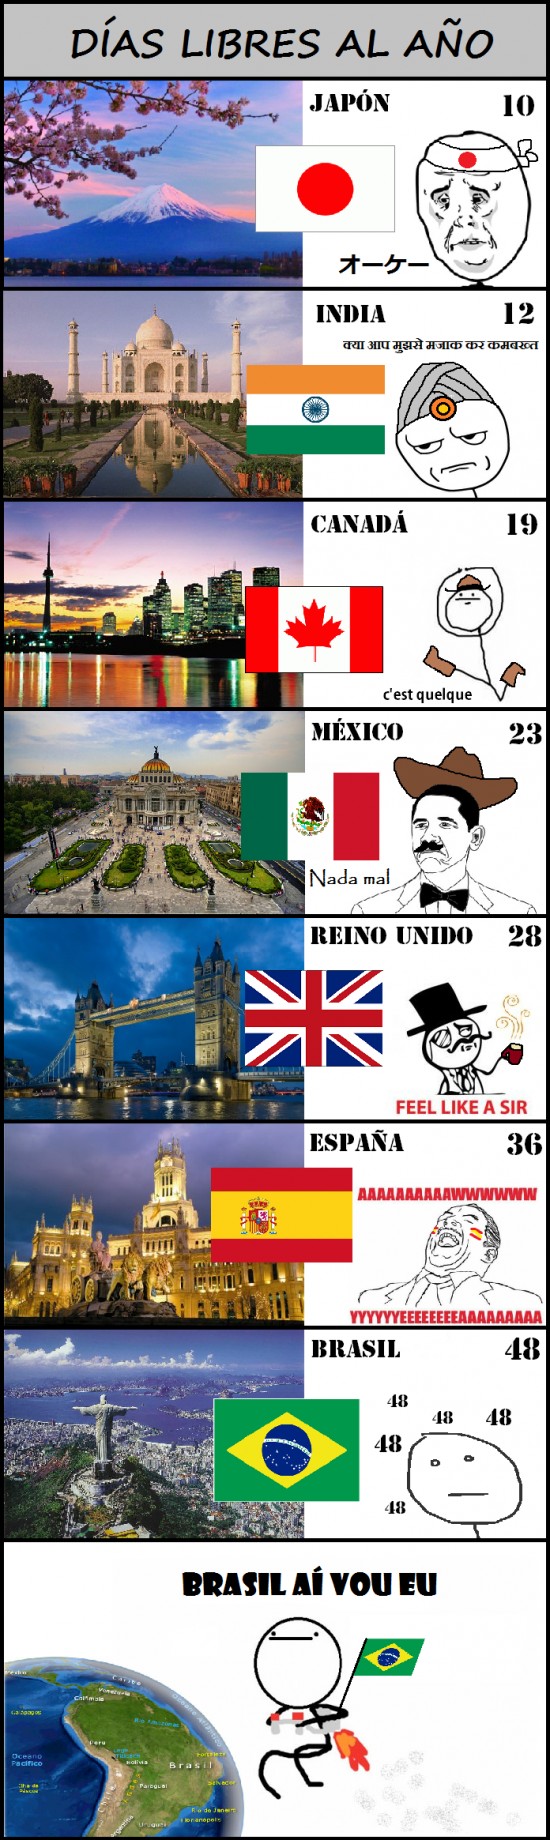 Bandera,Brasil,Canadá,Carnaval,España,India,Japón,México,País,Reino Unido,Vacaciones,Viajar